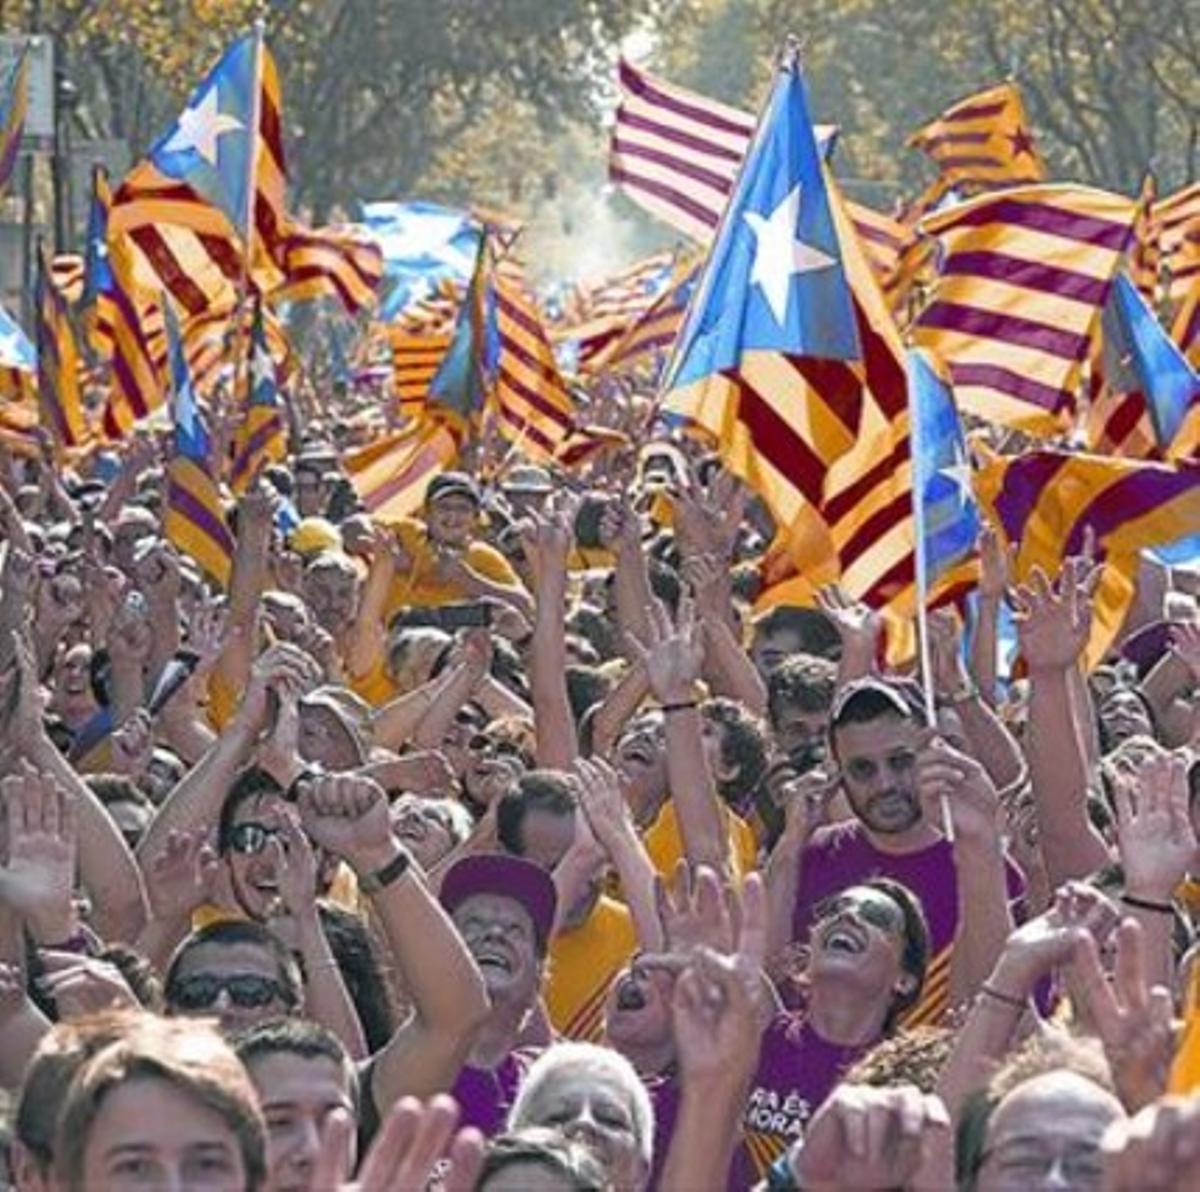 Un aspecte de la mobilització de la Diada a Barcelona.